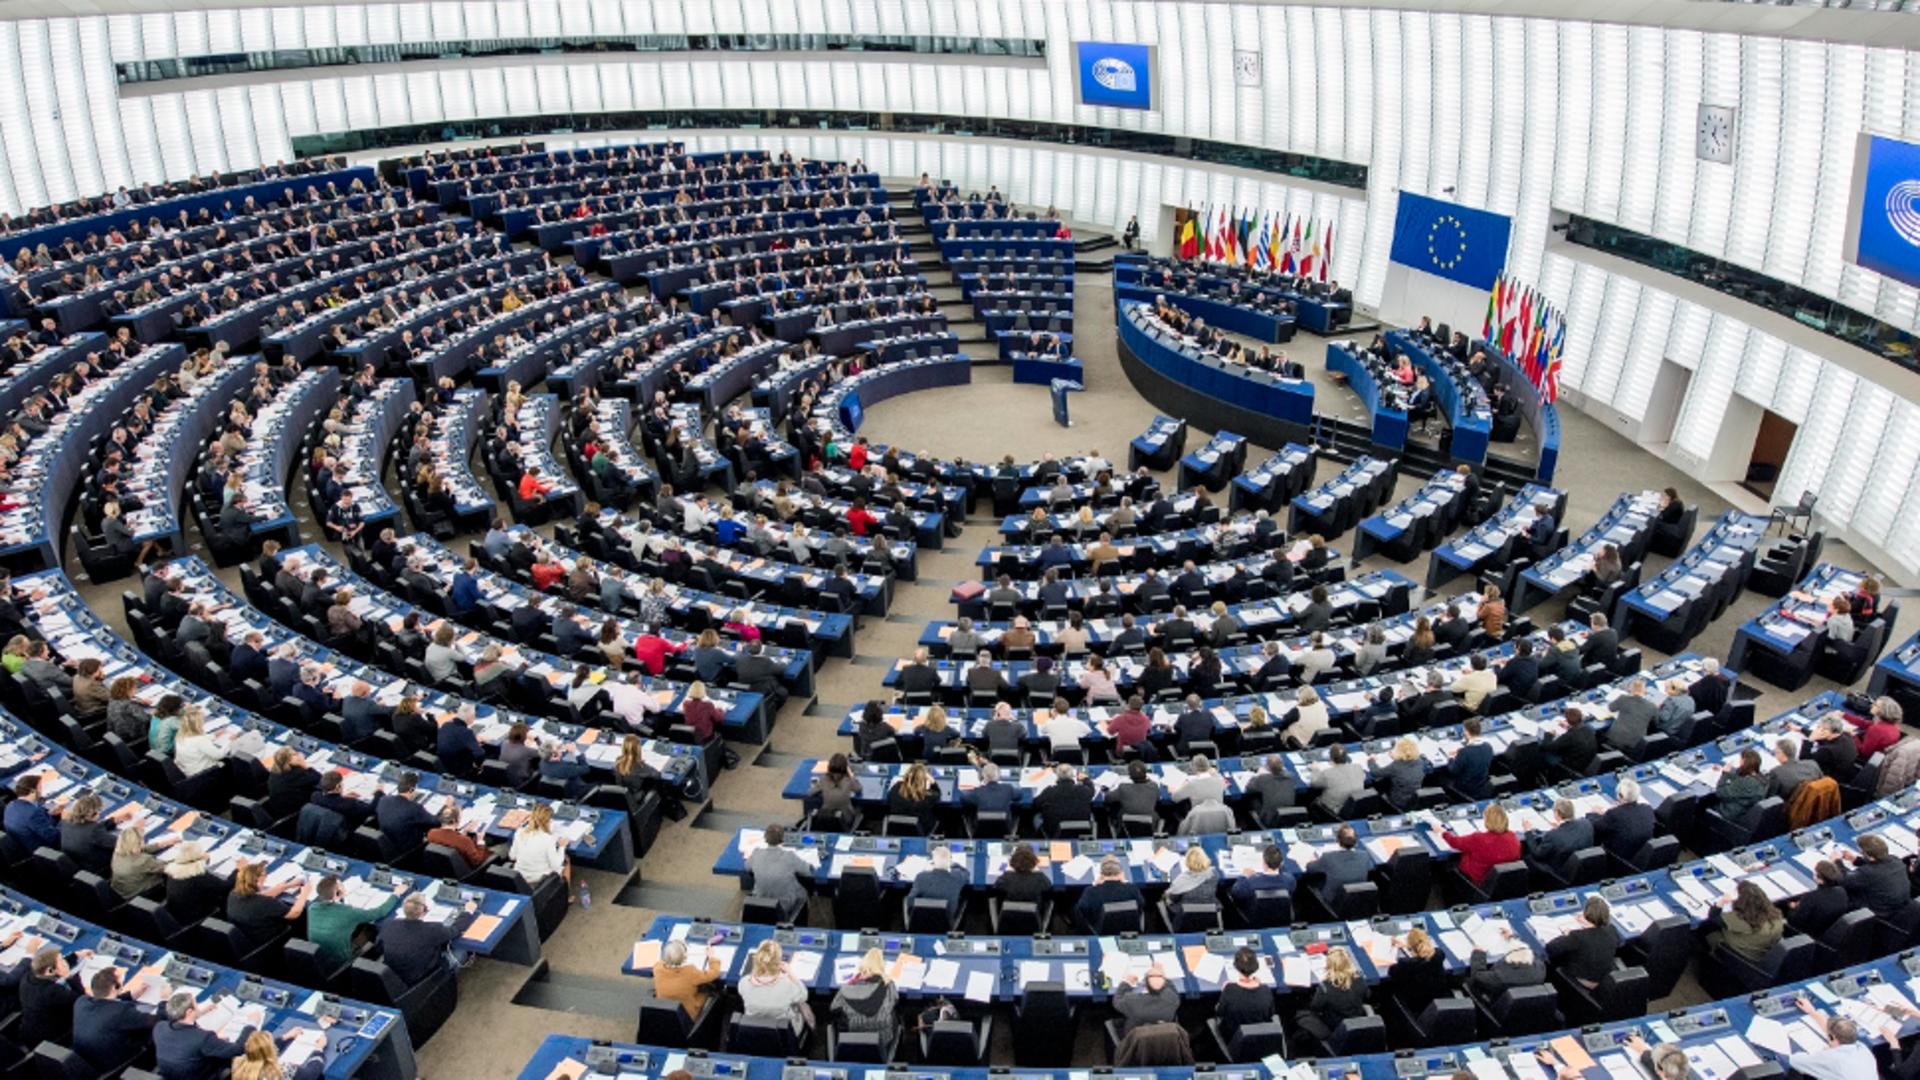 Propunerea Comisiei privind ”taxonomia verde” a trecut de Parlamentul European! Mesajele lui Iohannis, Ciucă și Popescu